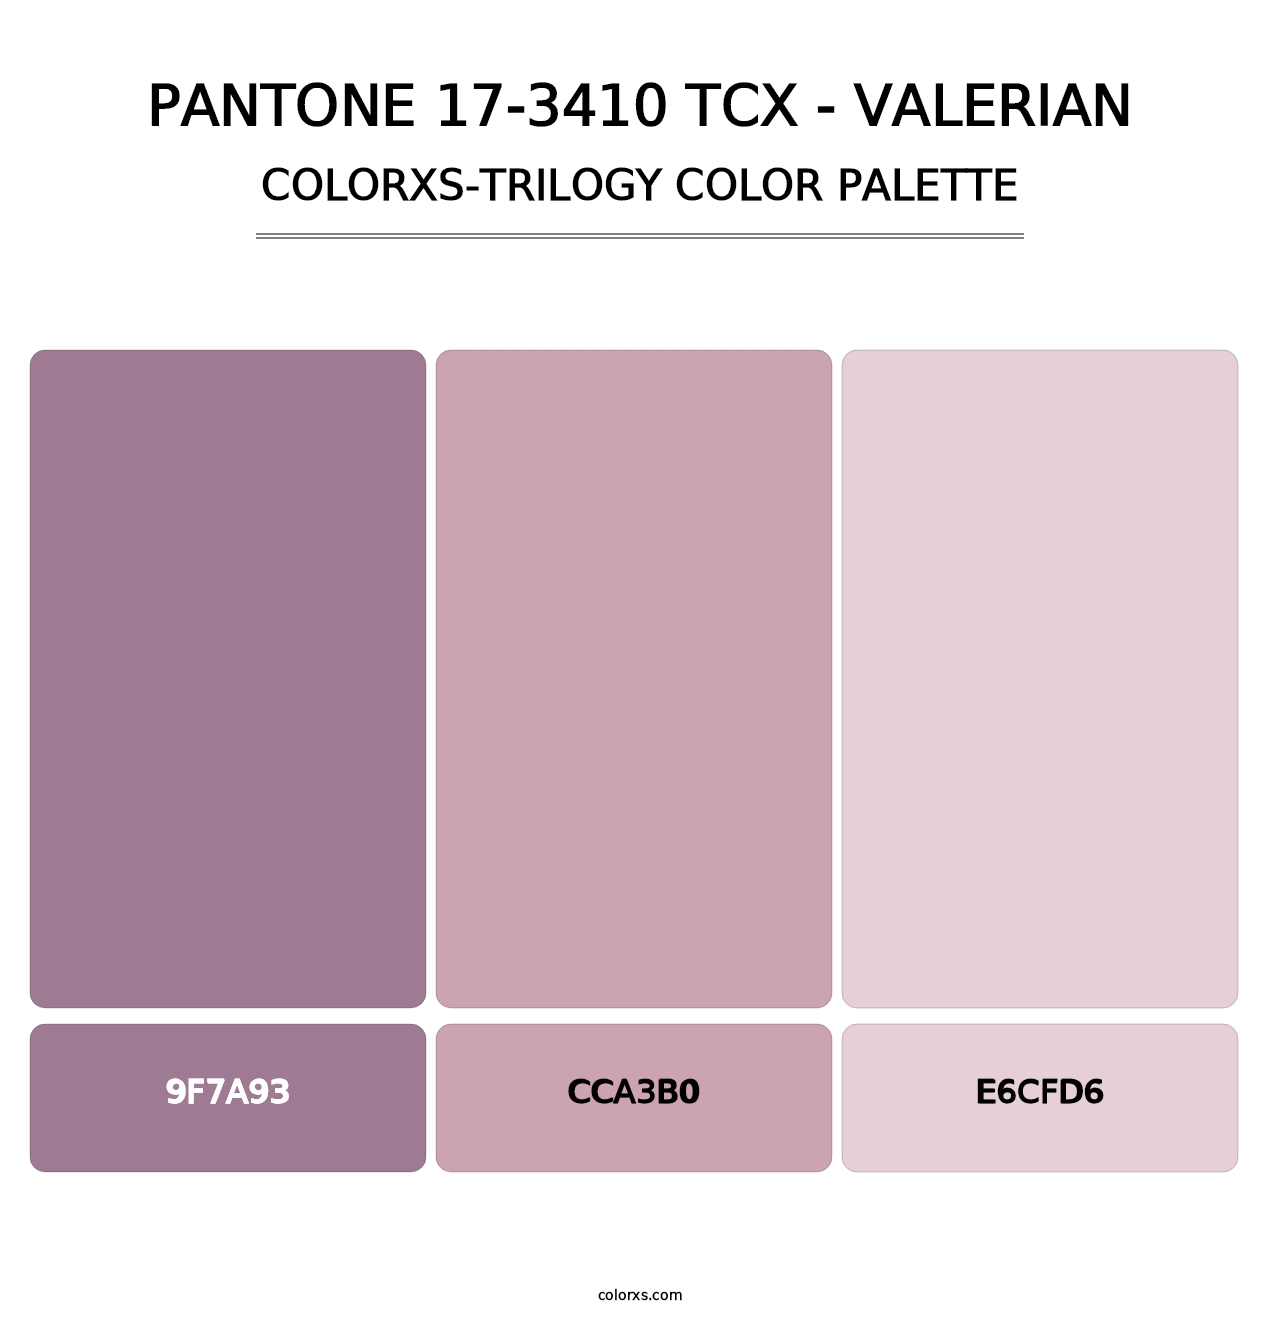 PANTONE 17-3410 TCX - Valerian - Colorxs Trilogy Palette